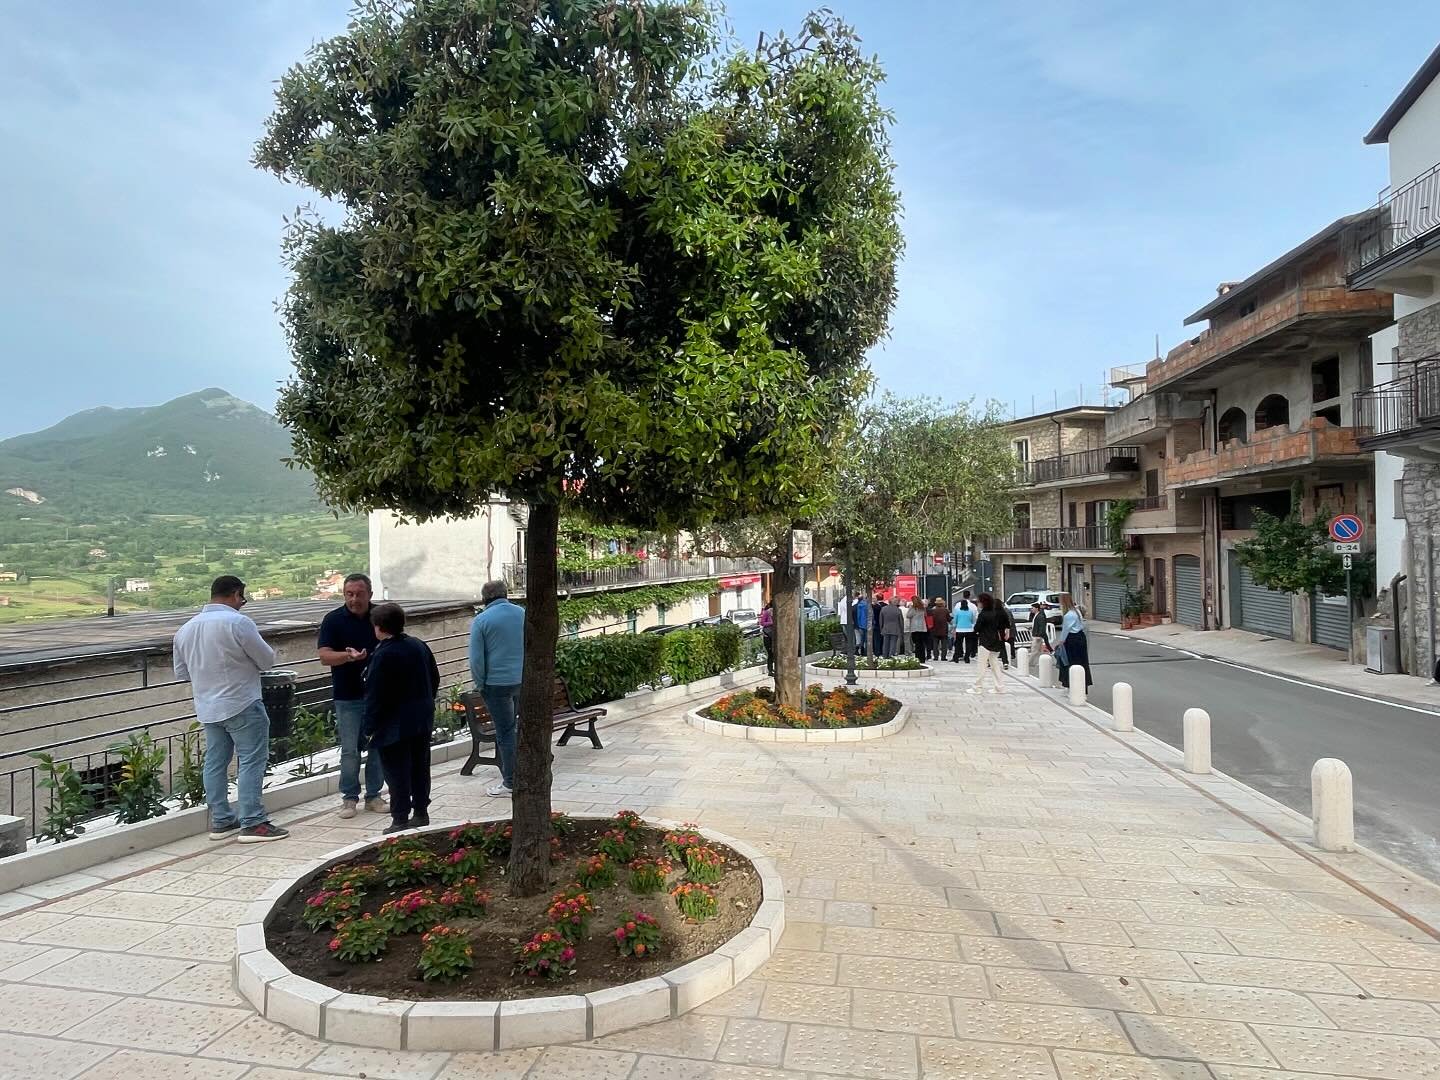 Riqualificato il giardino di Fontana Vecchia: nuovo spazio per la comunità di Trentinara